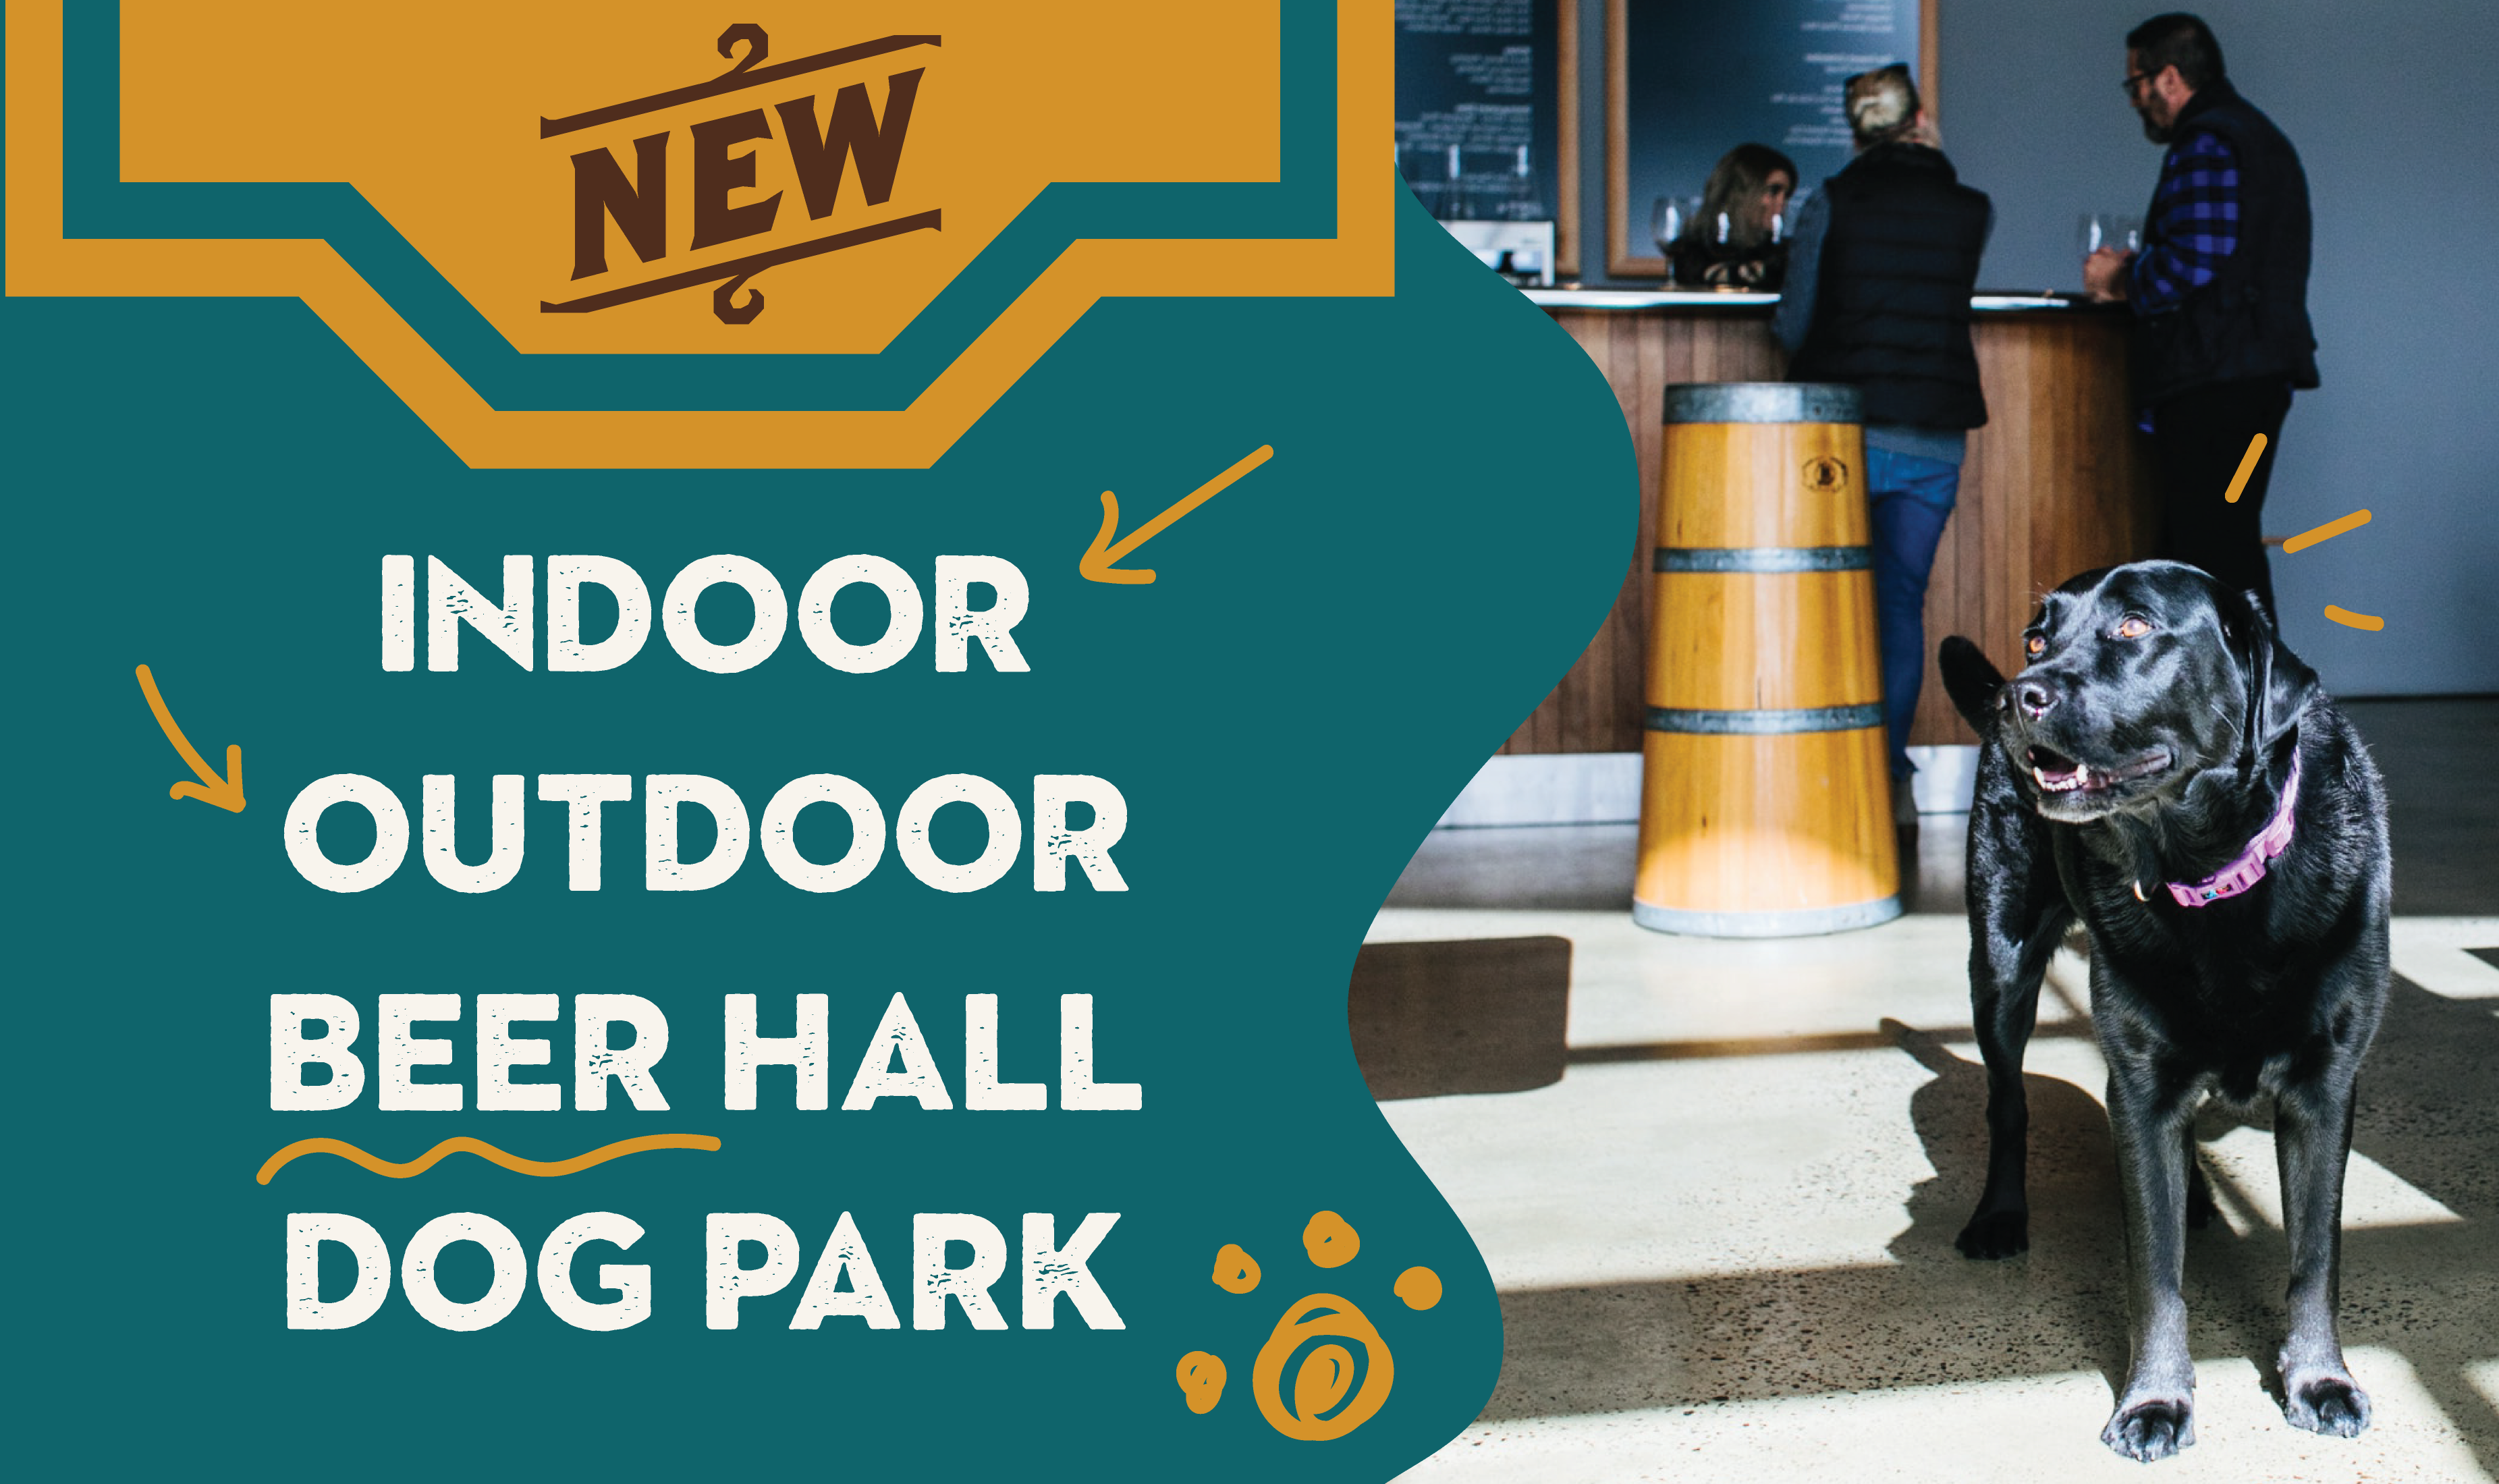 Indoor Outdoor Beer Hall Dog Park - Morty's